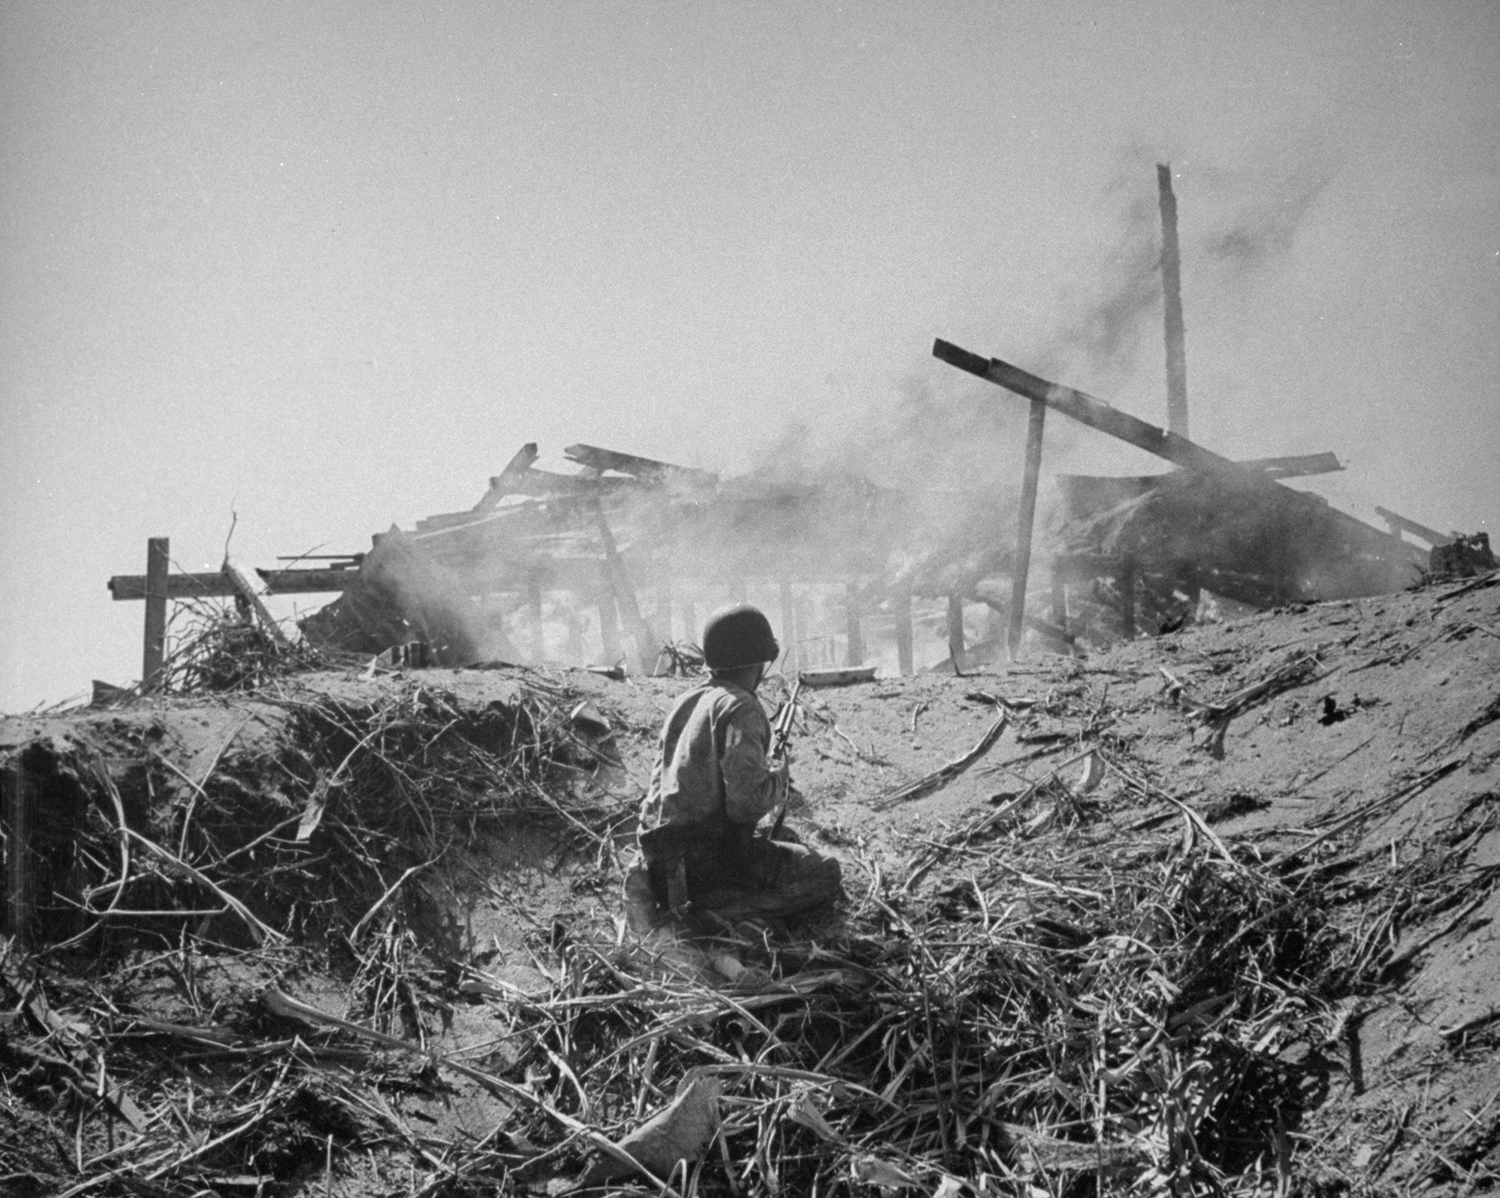 A U.S. Marine on Engebi Island during Battle of Eniwetok, February 1944.